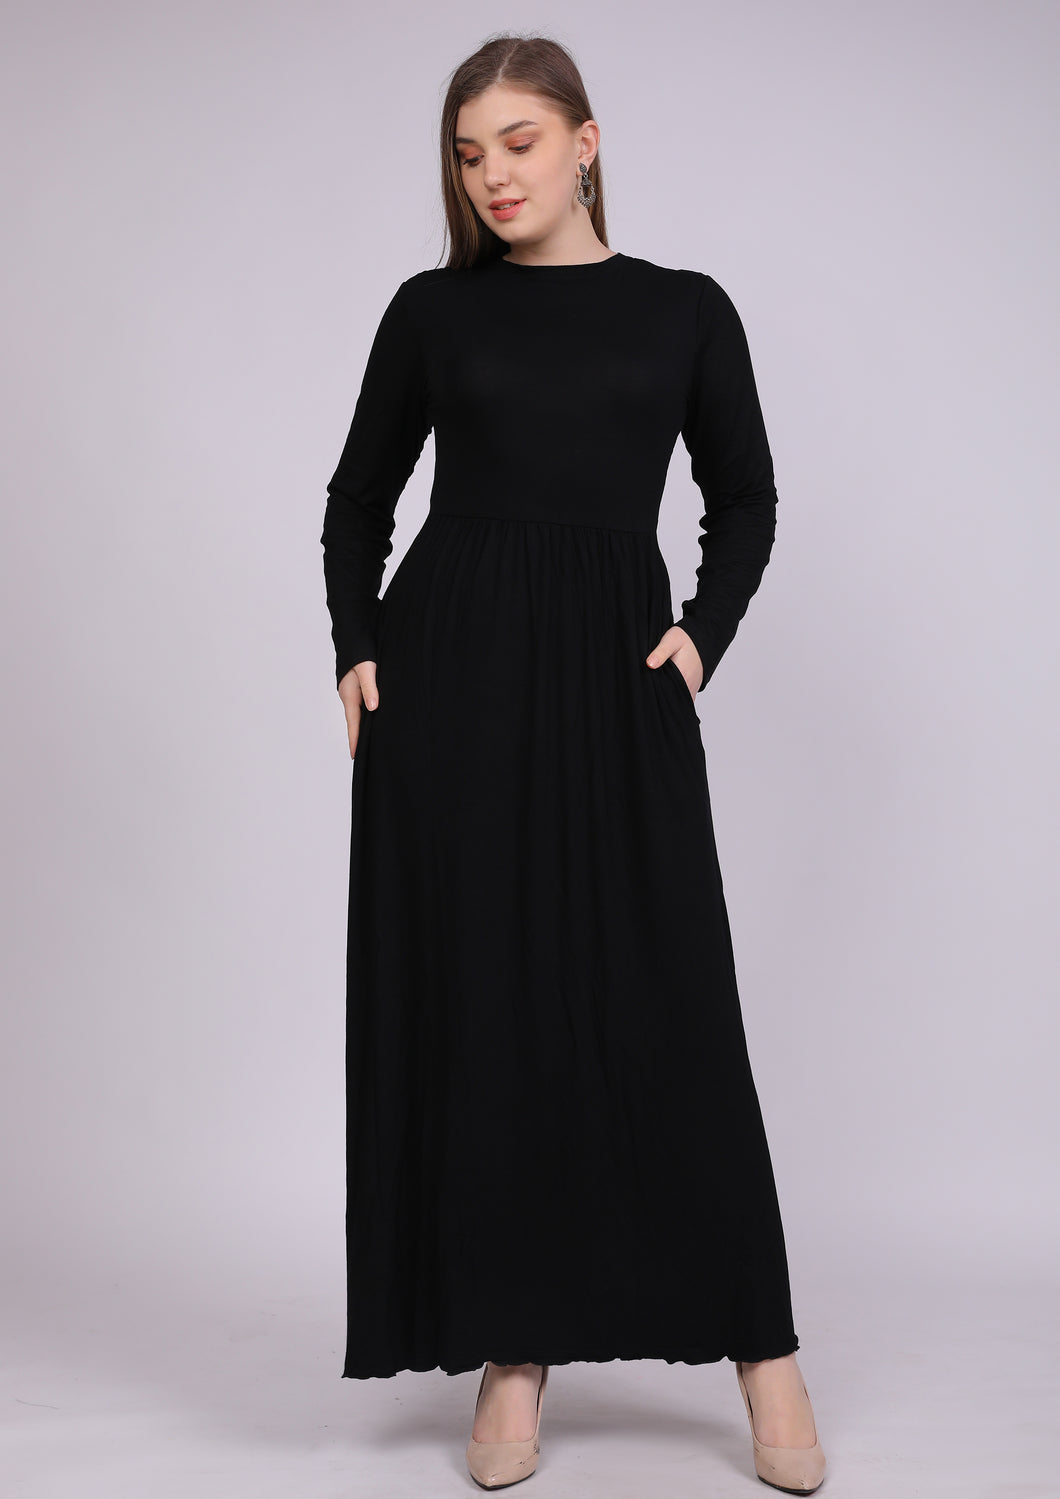 فستان فسكوز طبيعي بأستك من الوسط و جيوب أسود